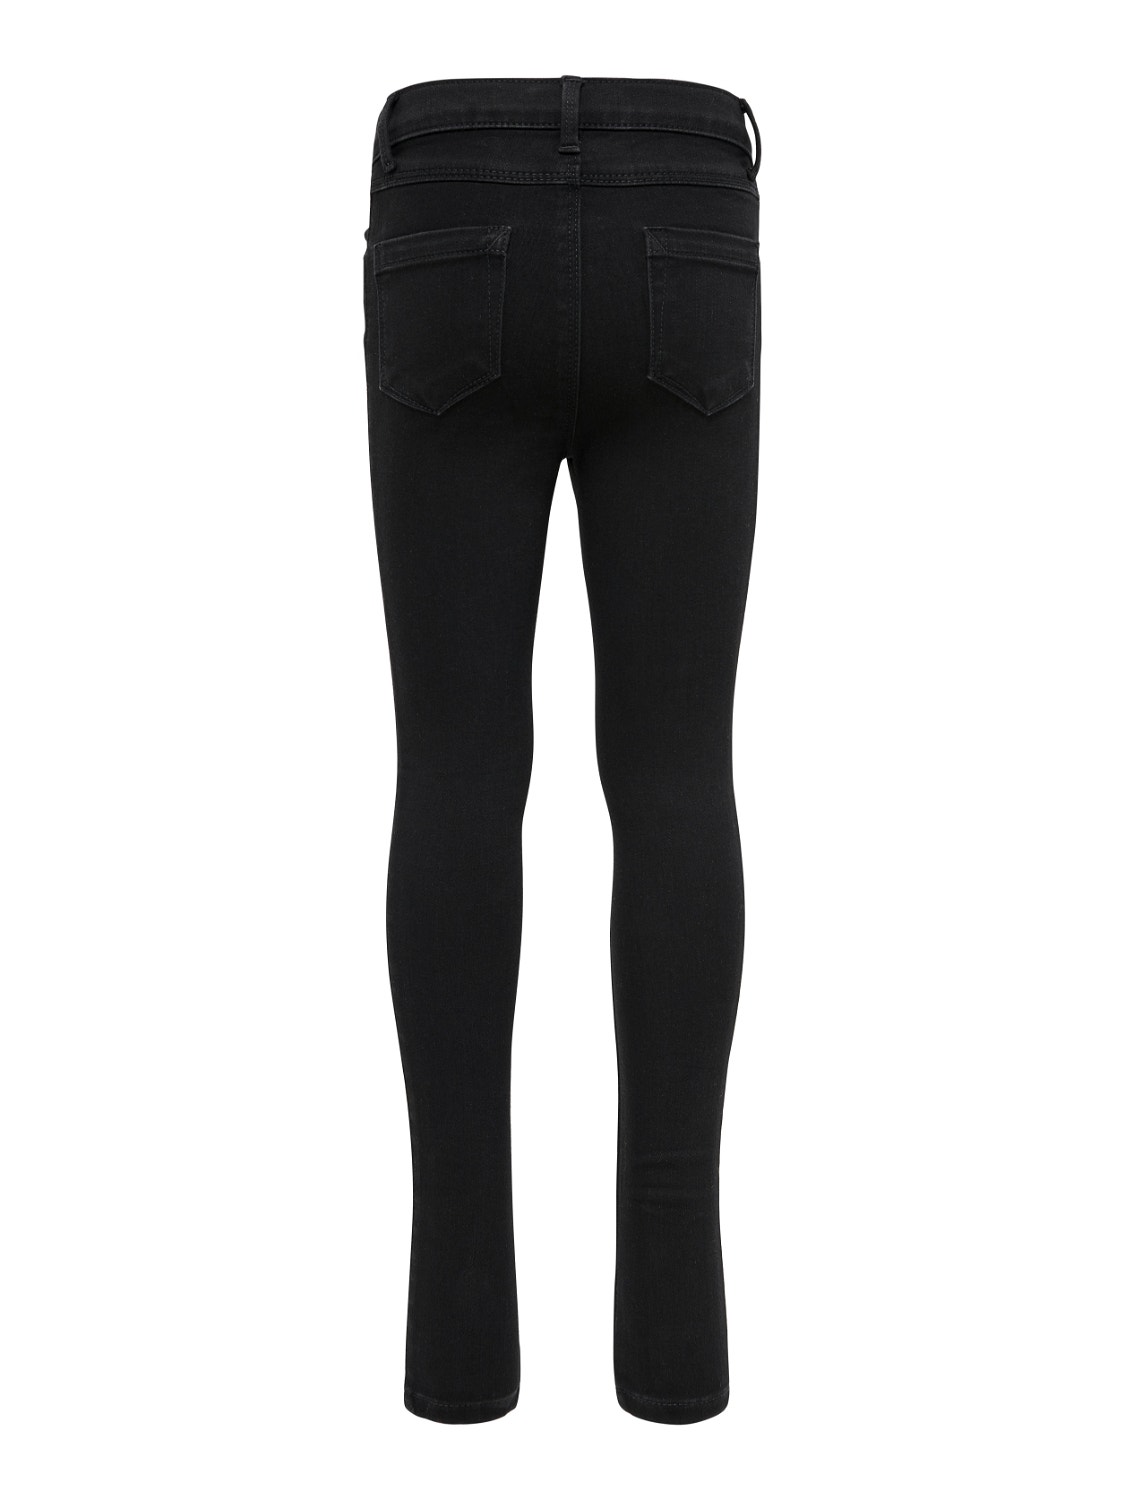 ONLY Skinny Fit Jeans -Black Denim - 15187070